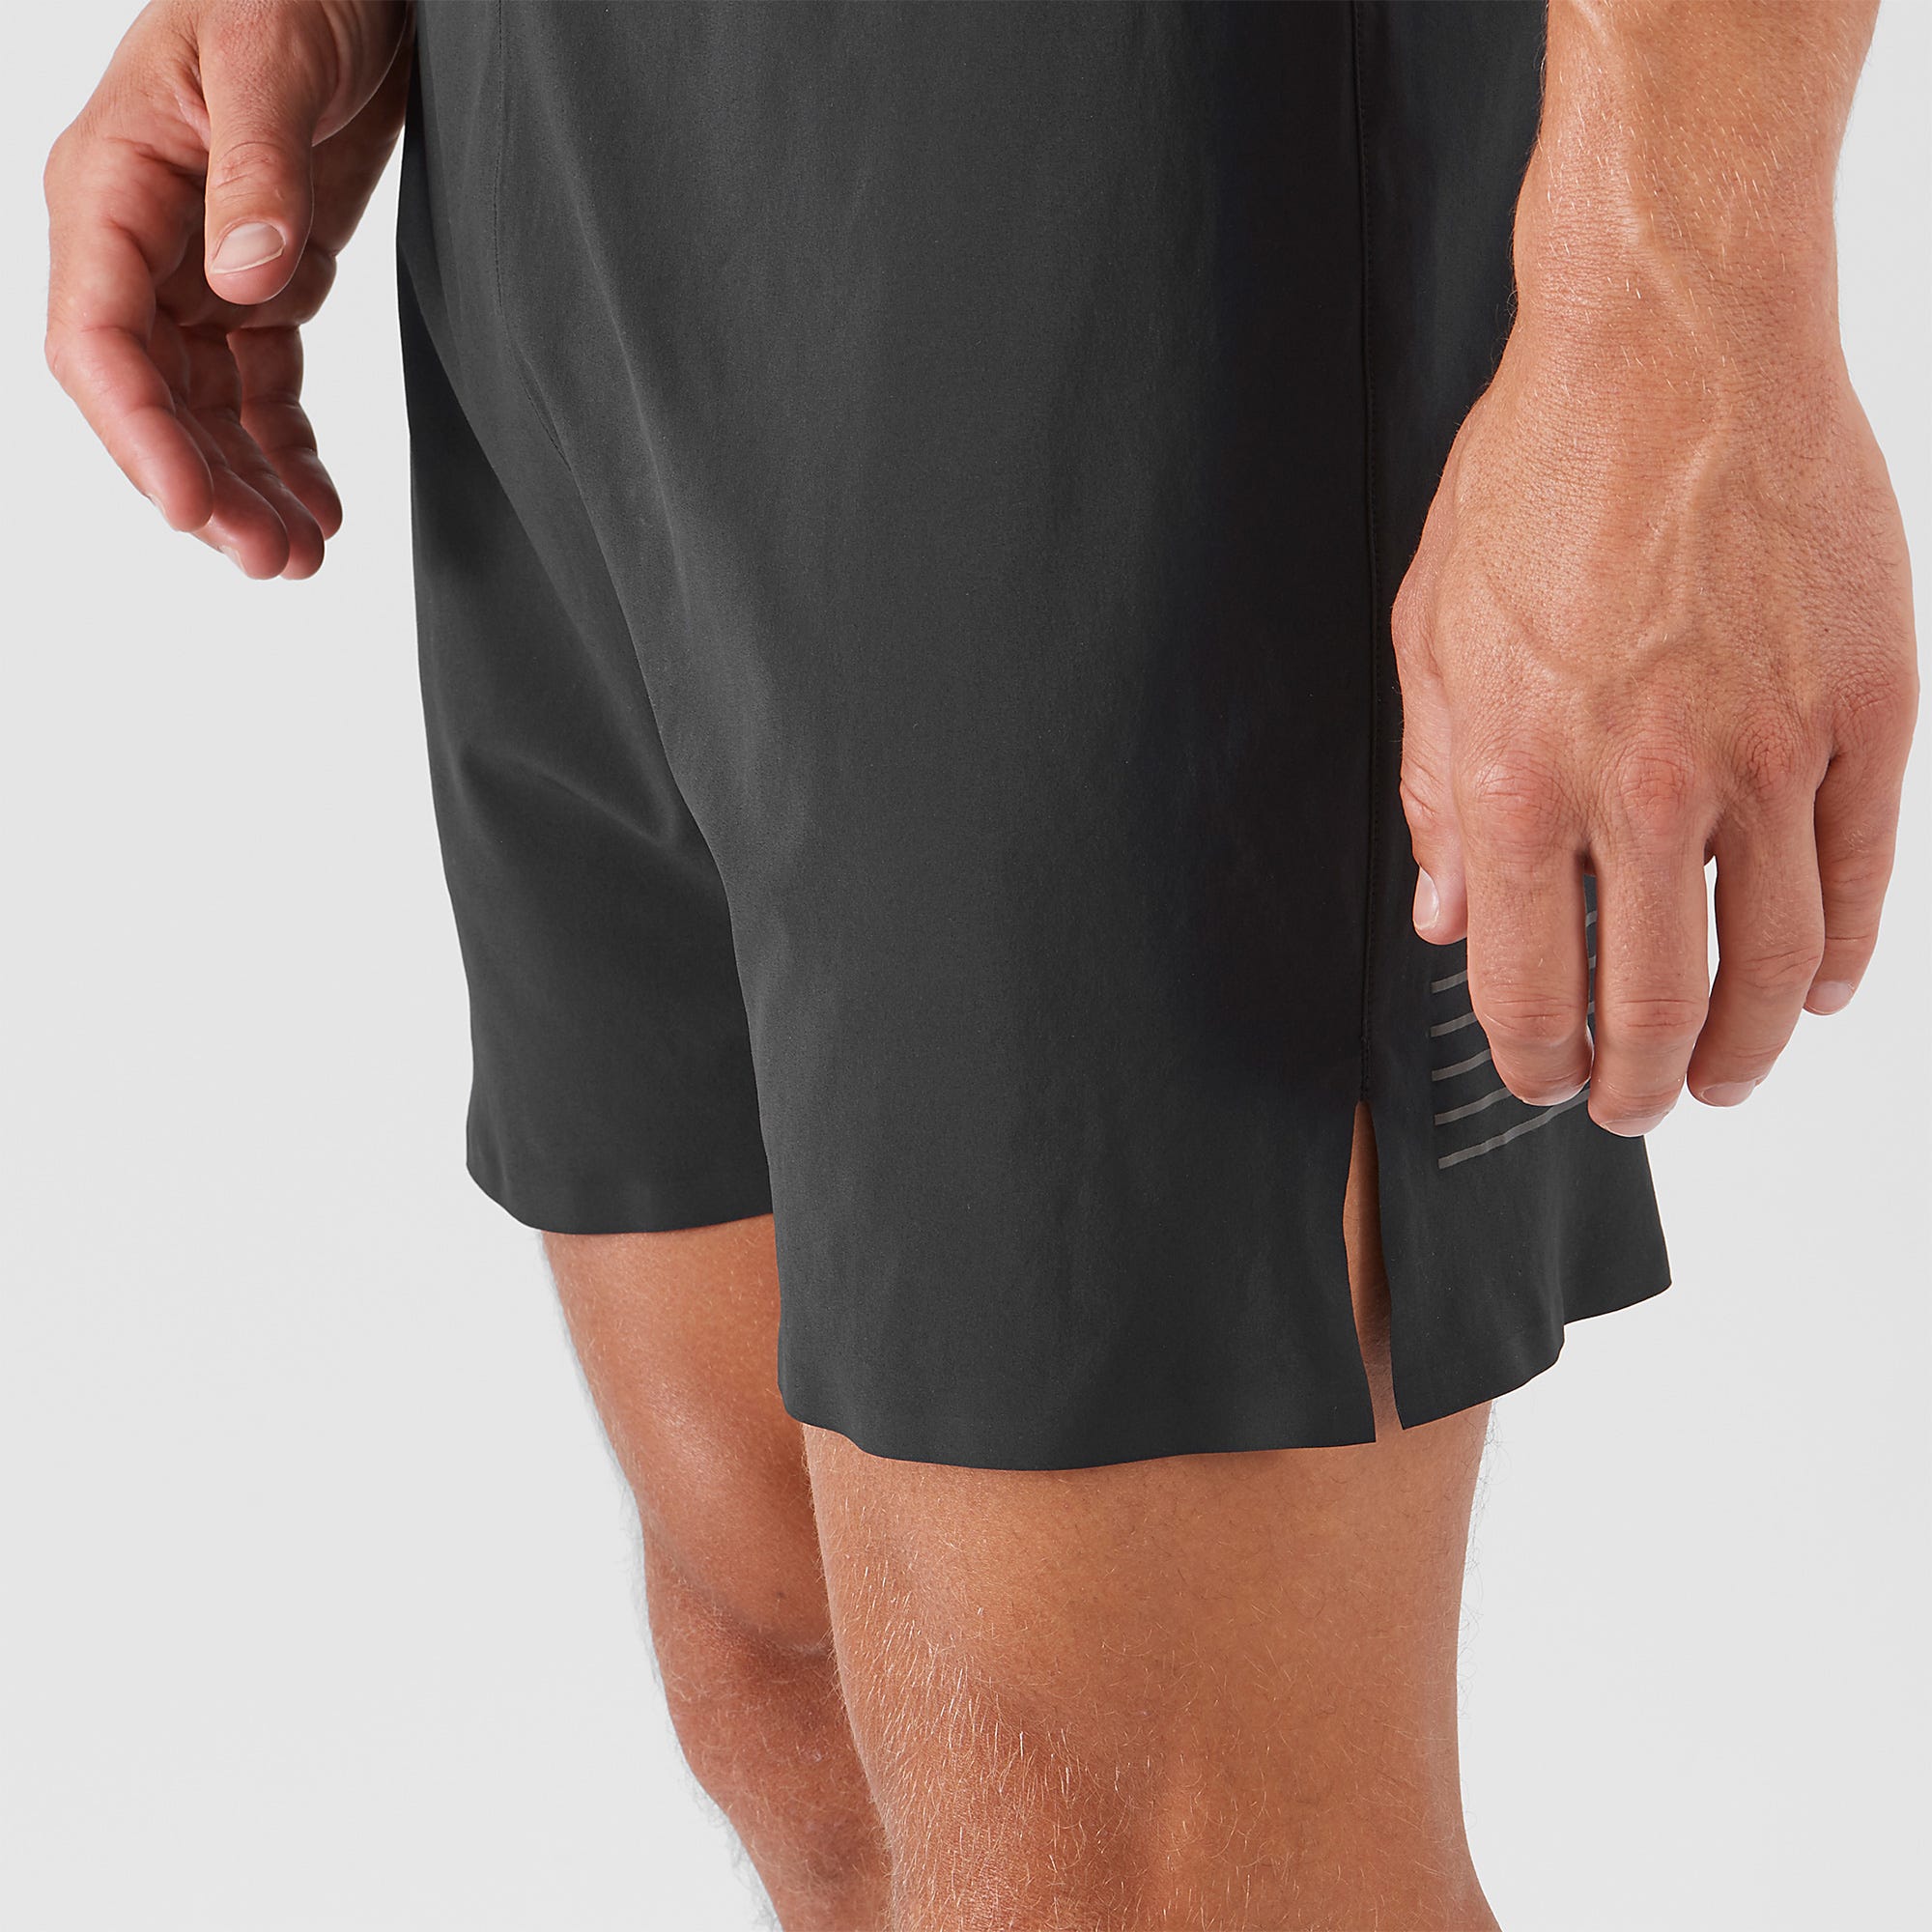 Salomon Sense 5" Shorts (Men's) - Black - Find Your Feet Australia Hobart Launceston Tasmania